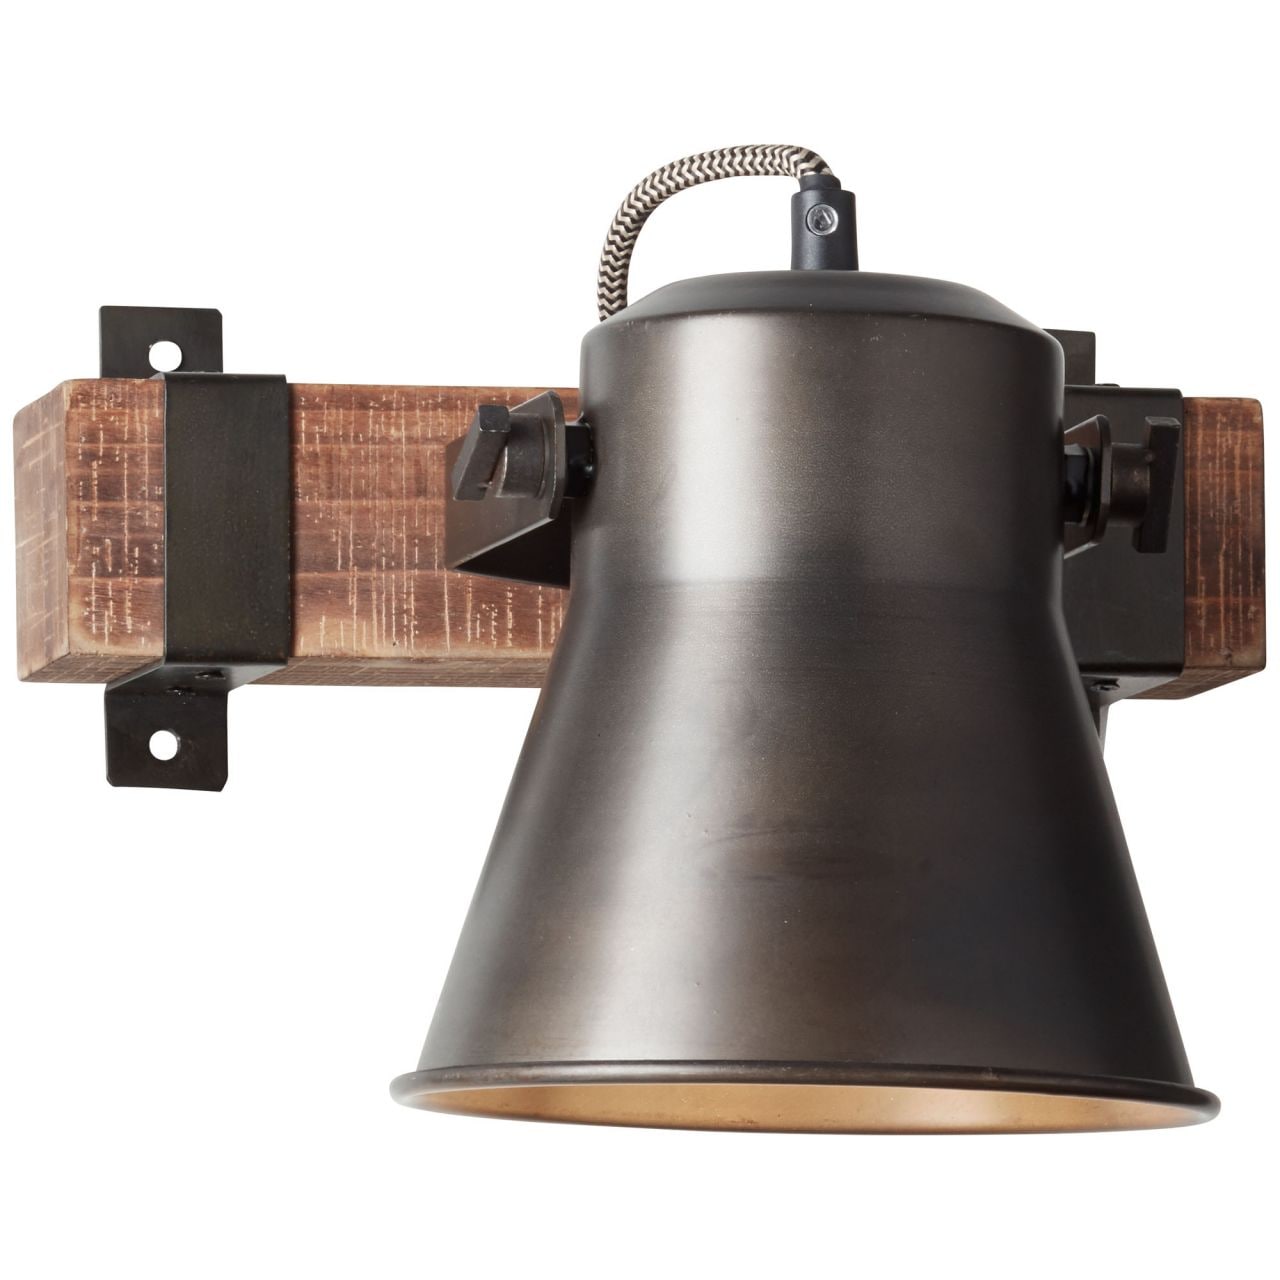 BRILLIANT Lampe Plow Wandspot schwarz stahl   1x A60, E27, 10W, geeignet für Normallampen (nicht enthalten)   Kopf schwe